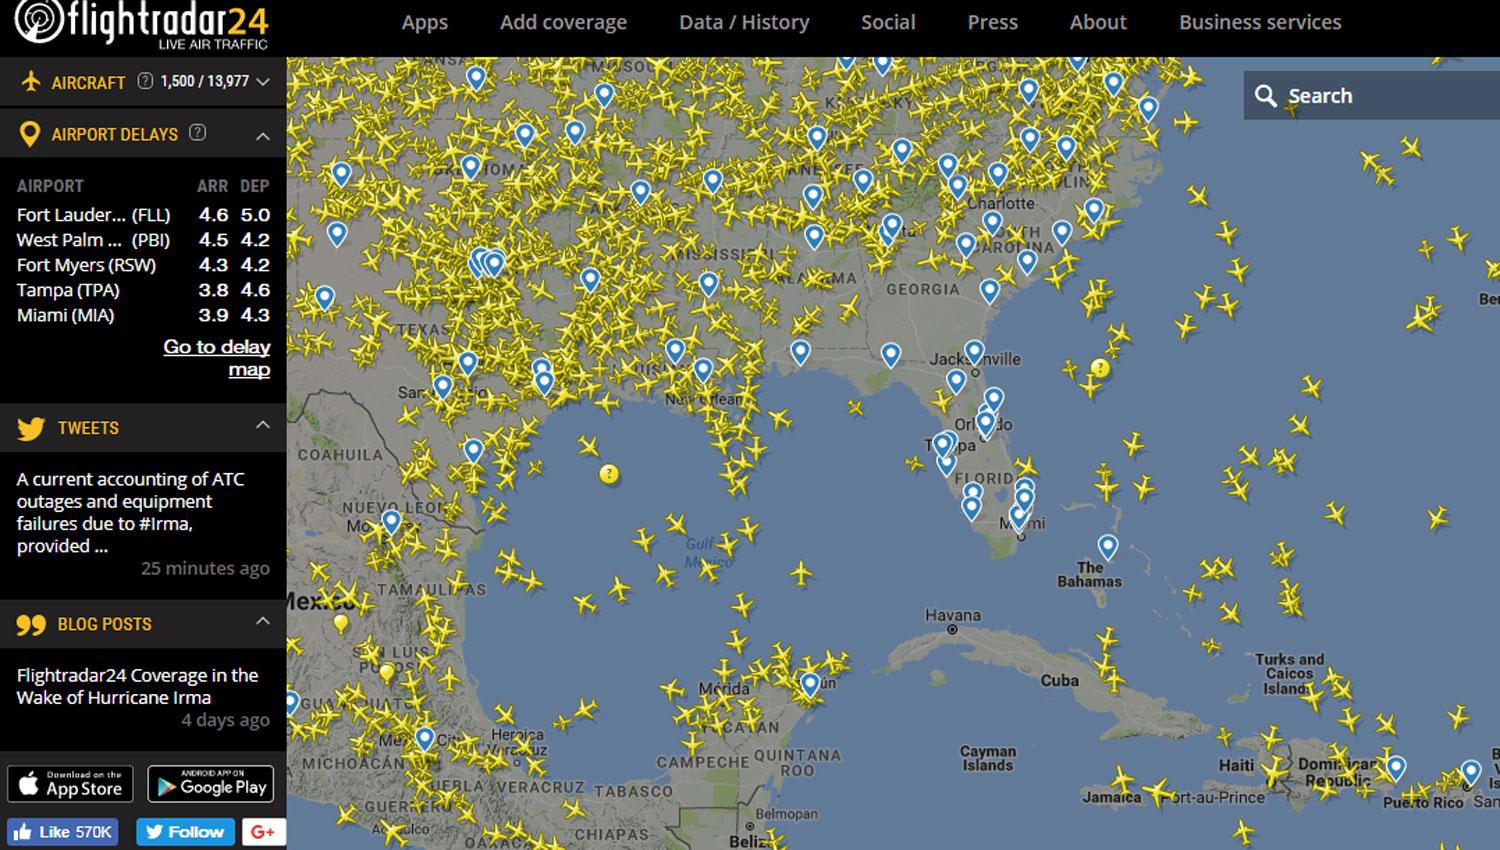 RADARES AÉREOS. En la imagen de radar se observa que en la península de Florida no hay vuelos. CAPTURA DE FLIGHTRADAR24